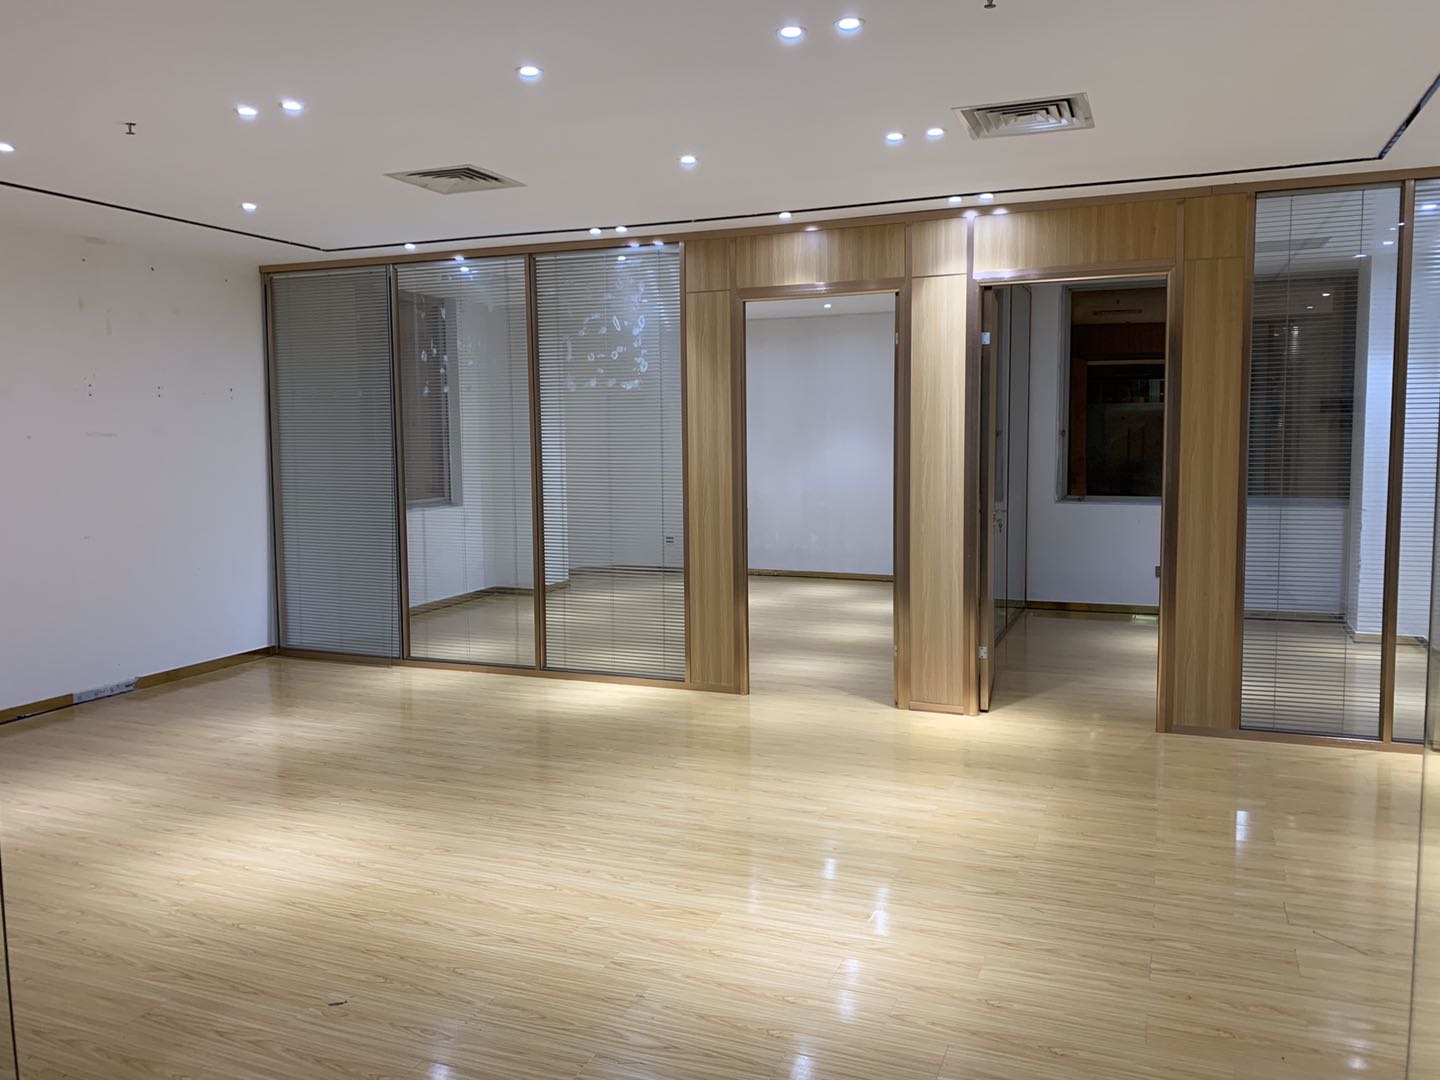 深圳罗湖甲级写字楼2+1格局精装修拎包入住小面积办公室出租。